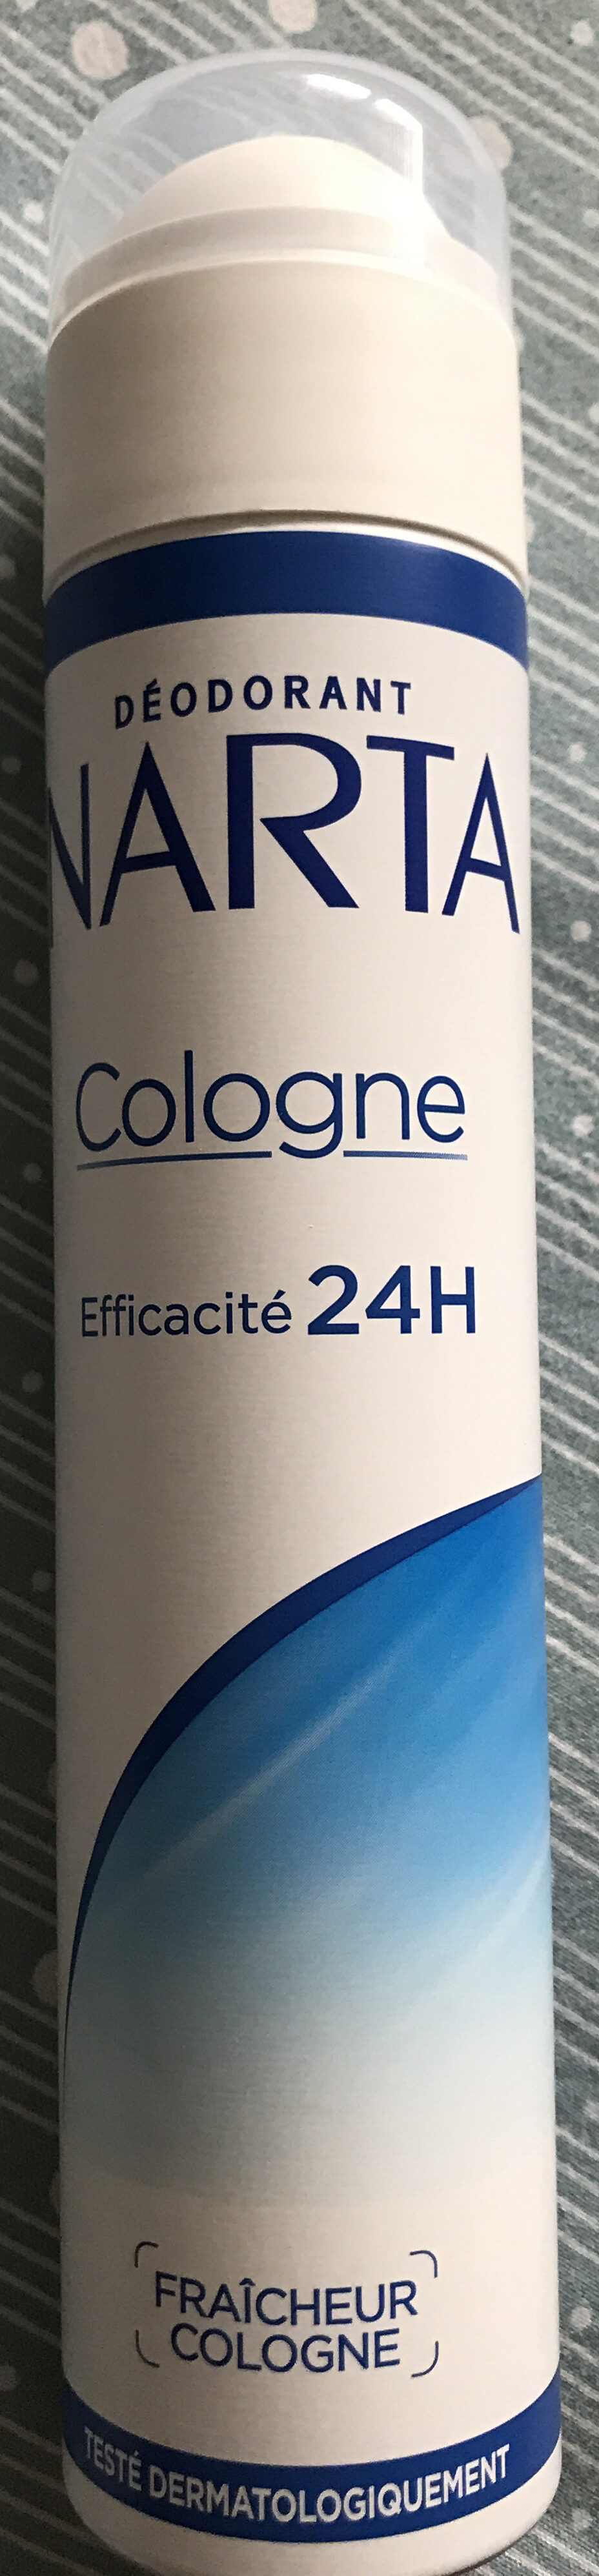 Deodorant narta cologne - Product - en